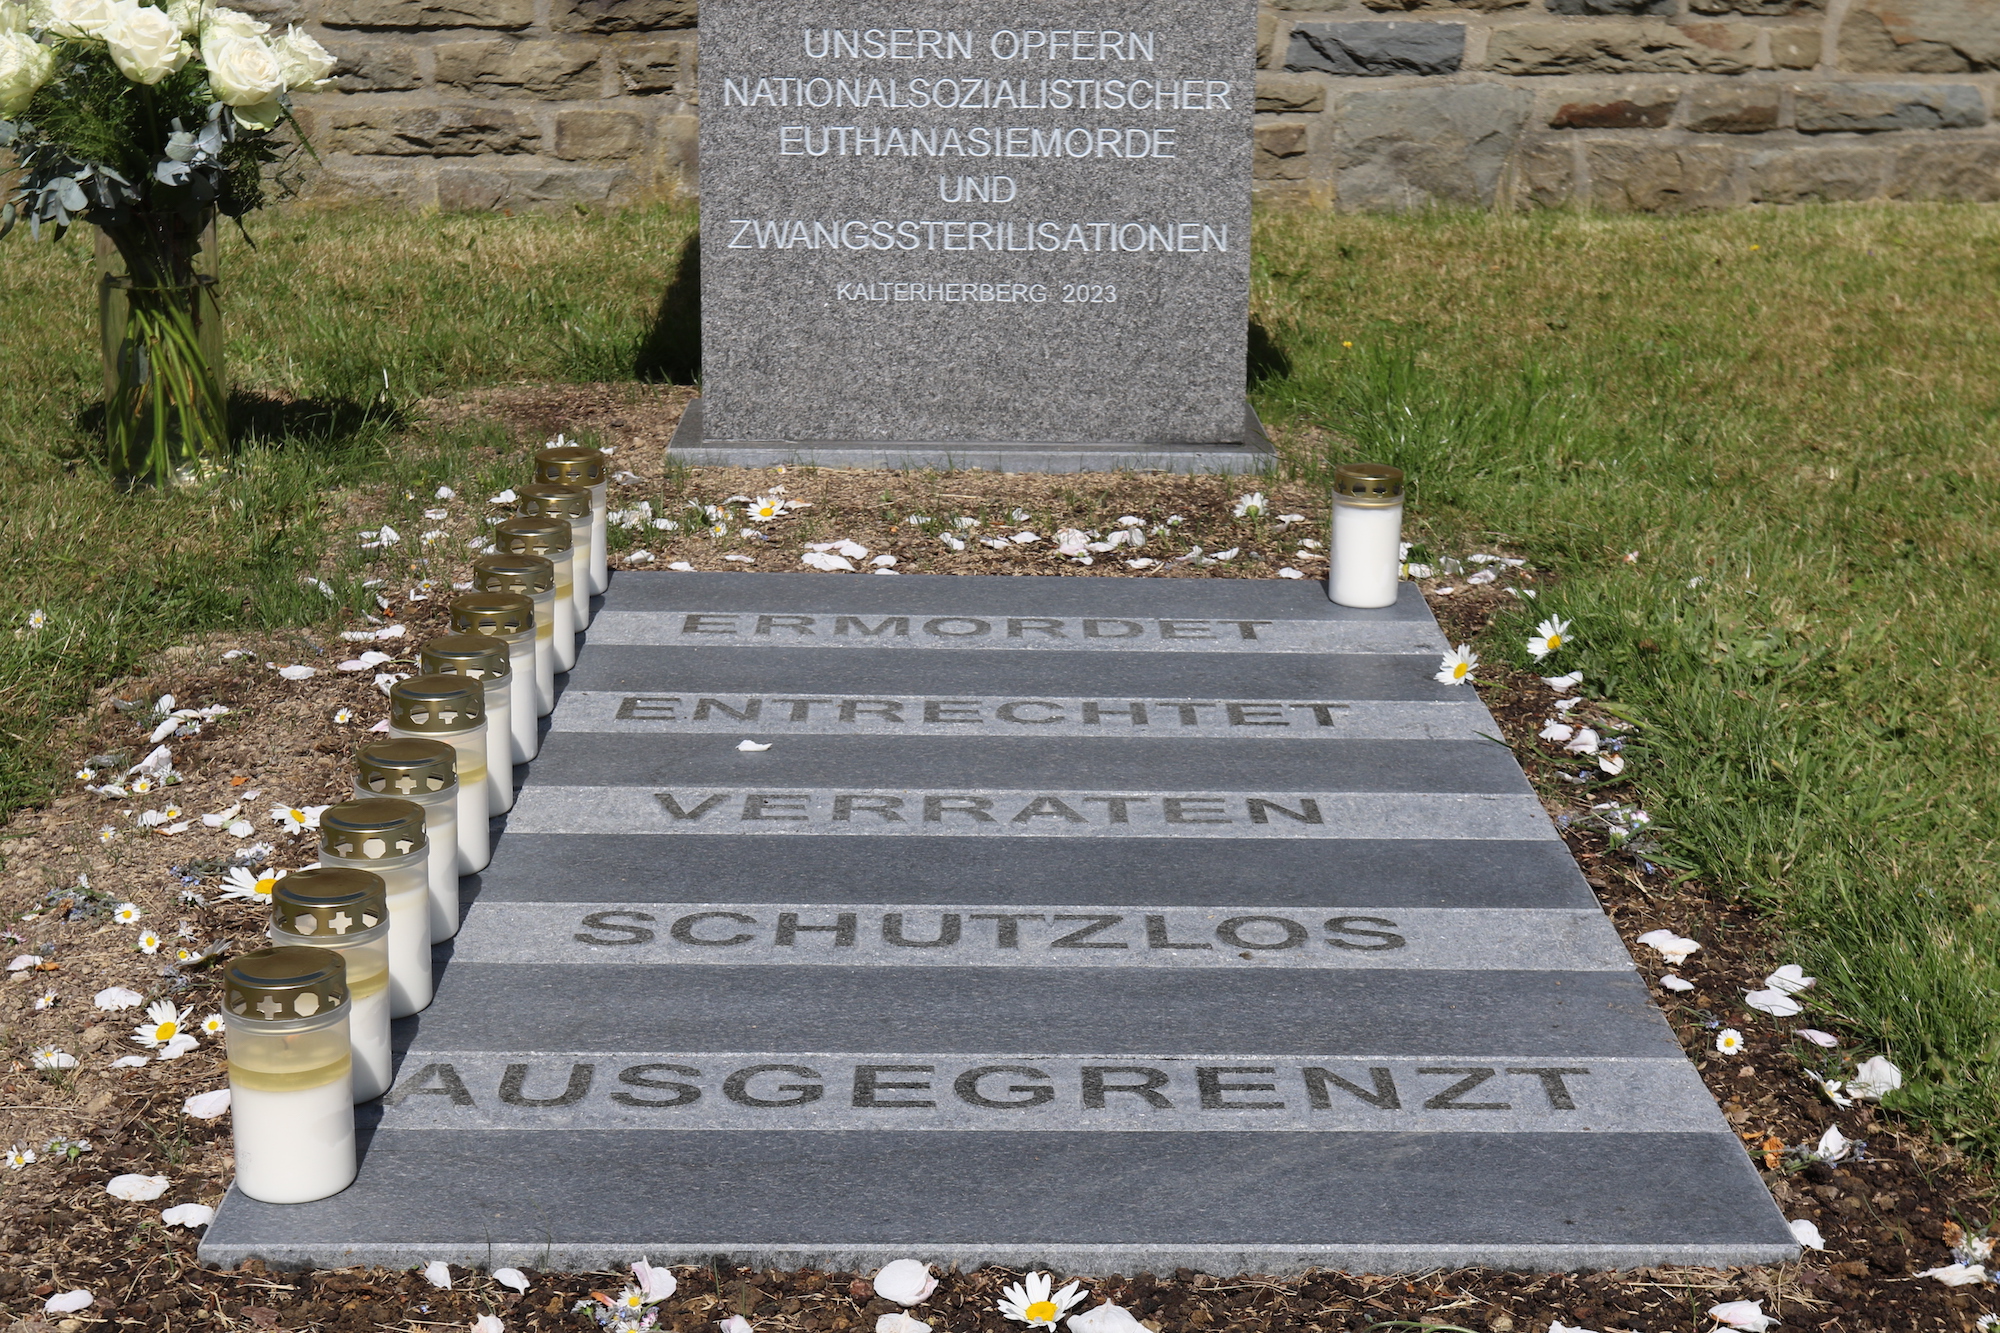 Die Stele erinnert an das Leid der Opfer von Euthanasie und Zwangssterilisation. (c) Stephan Johnen